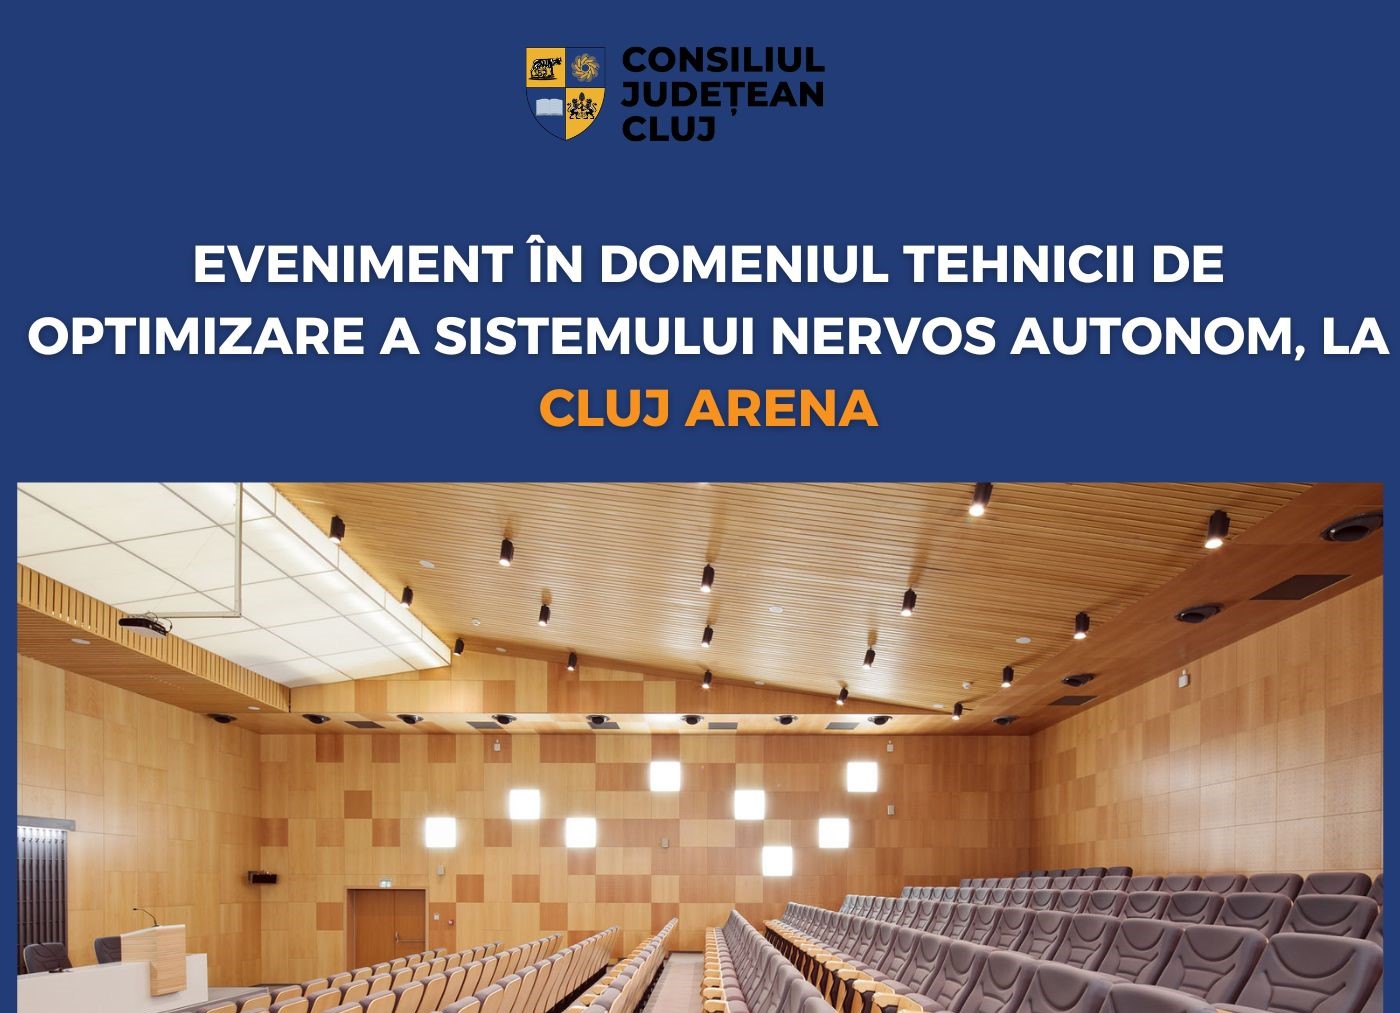 Optimizarea sistemului nervos autonom prin neuromodulare, la Cluj Arena 